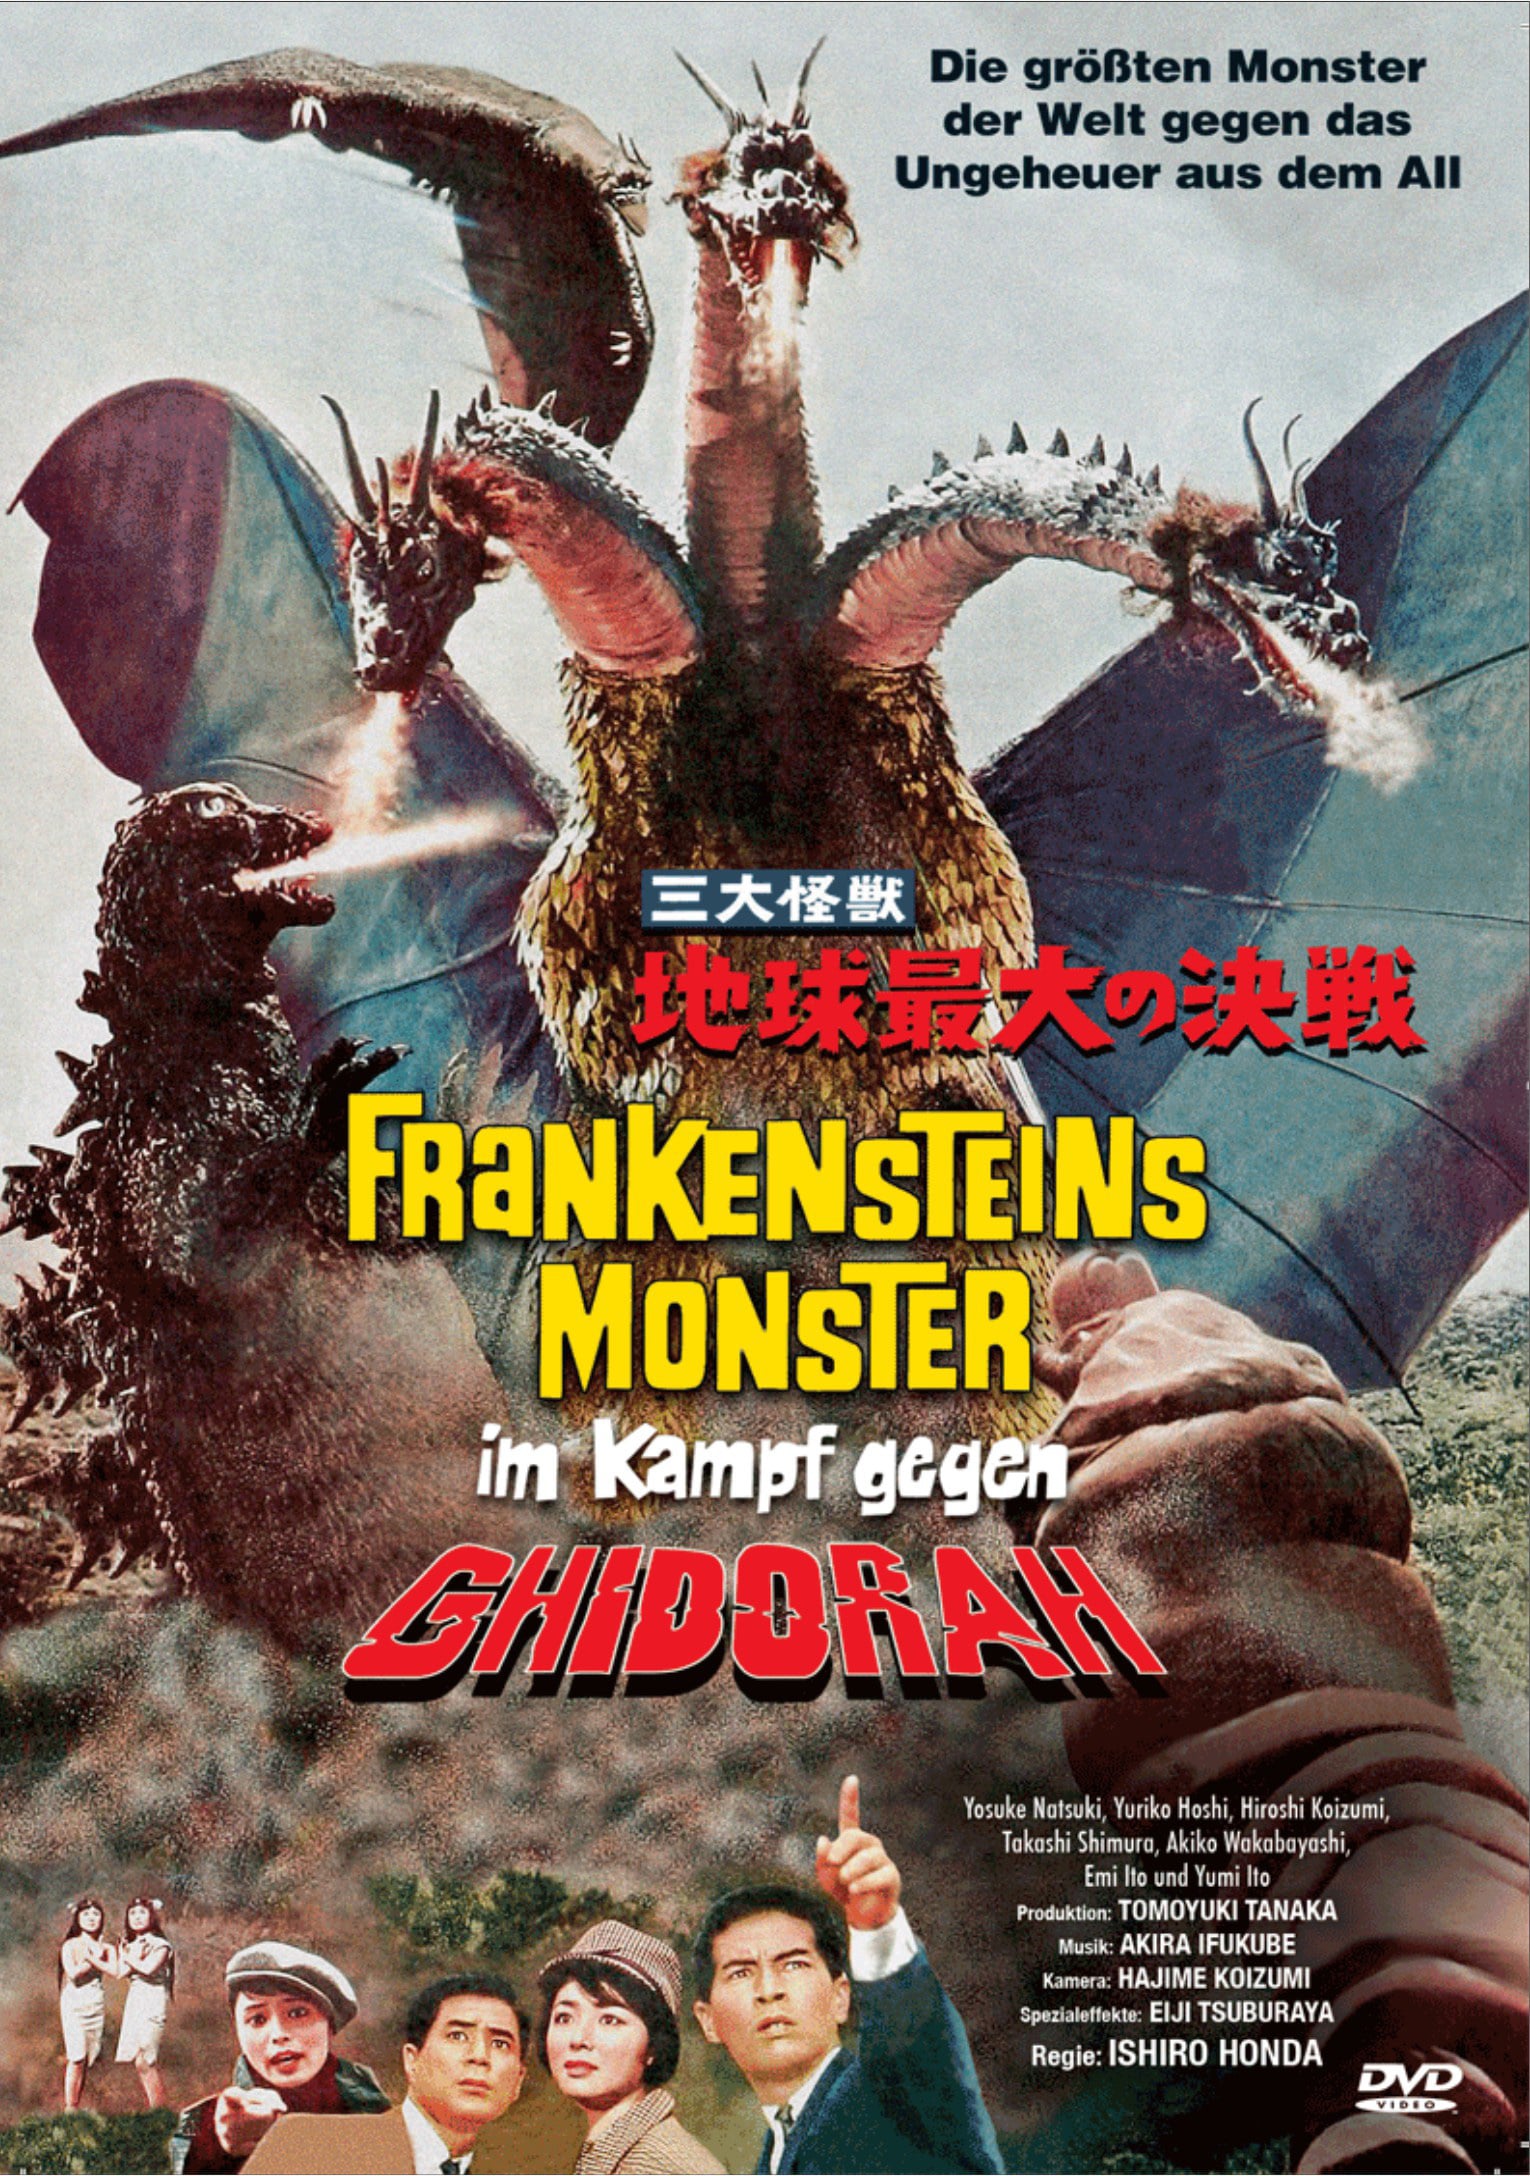 Plakat von "Frankensteins Monster im Kampf gegen Ghidorah"